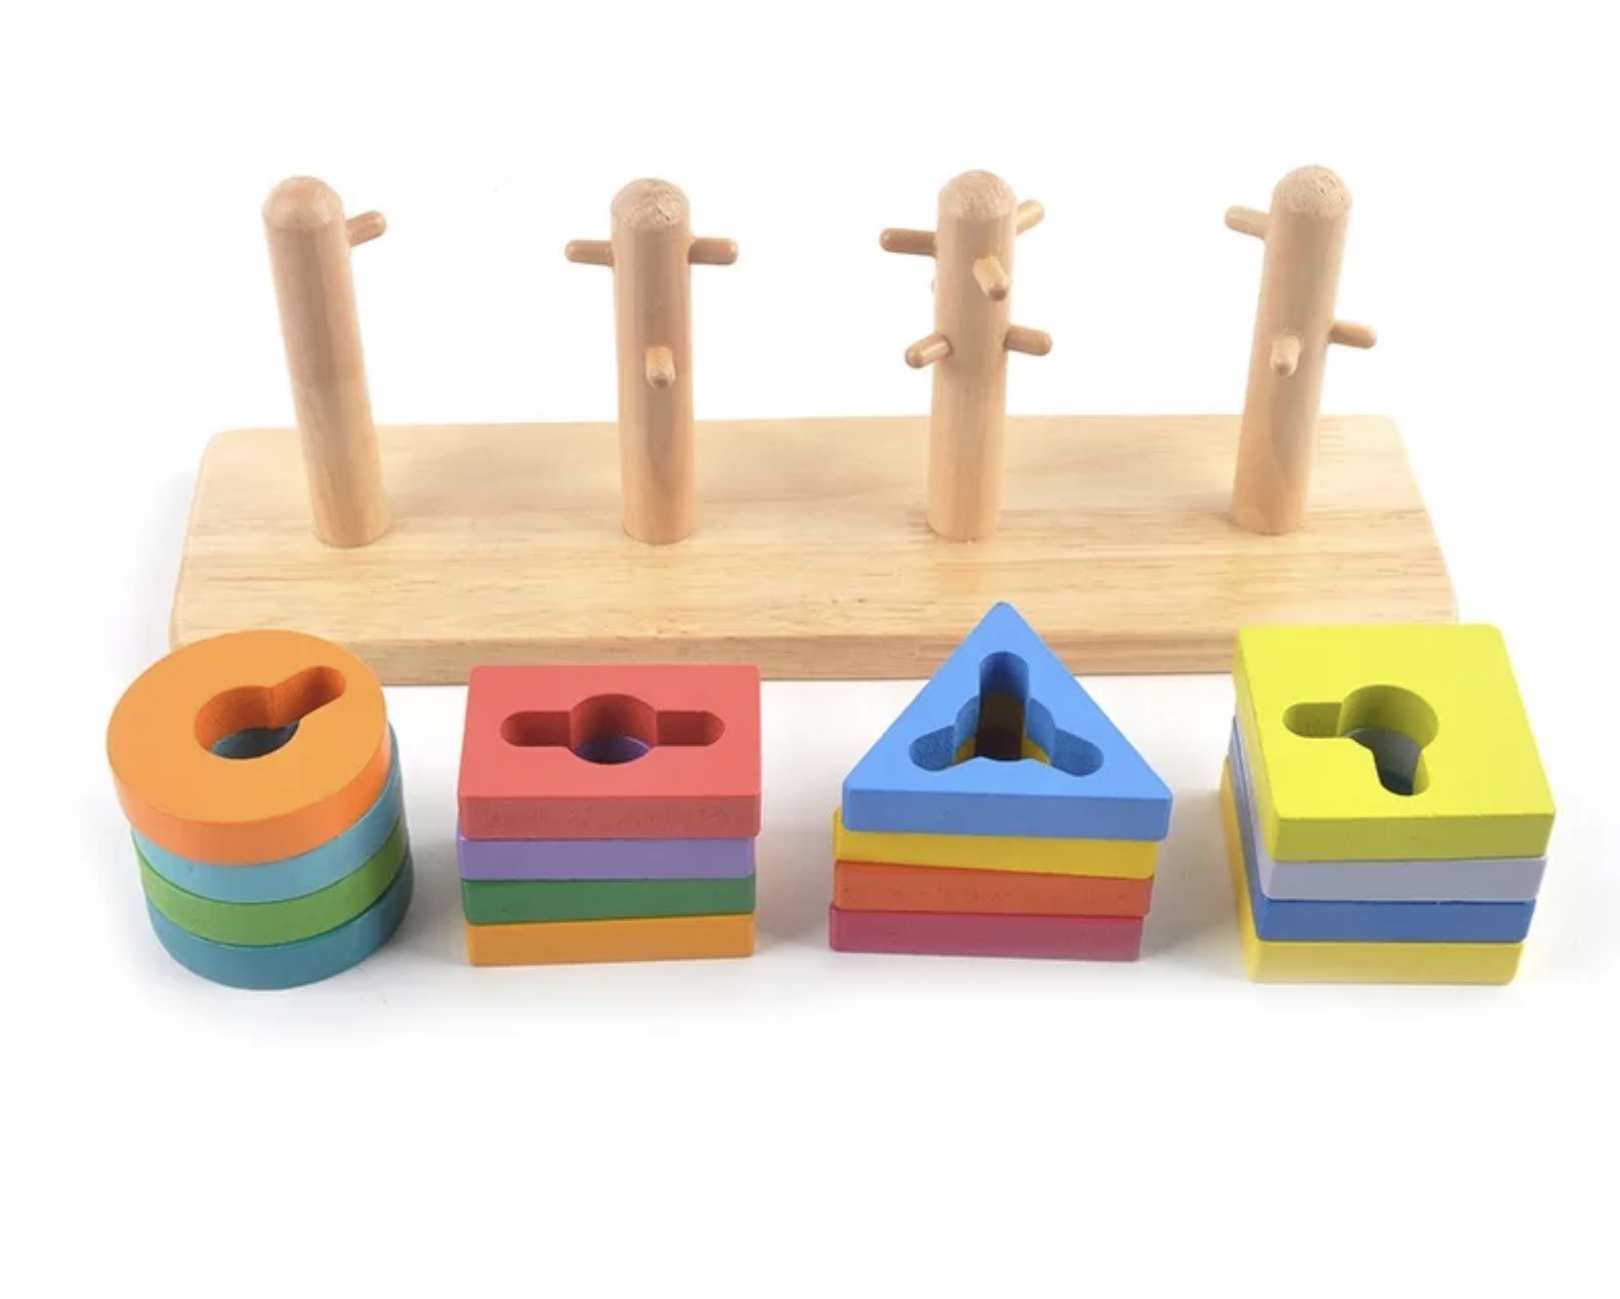 
Joc din lemn educativ cu forme geometrice de tip montessori 
